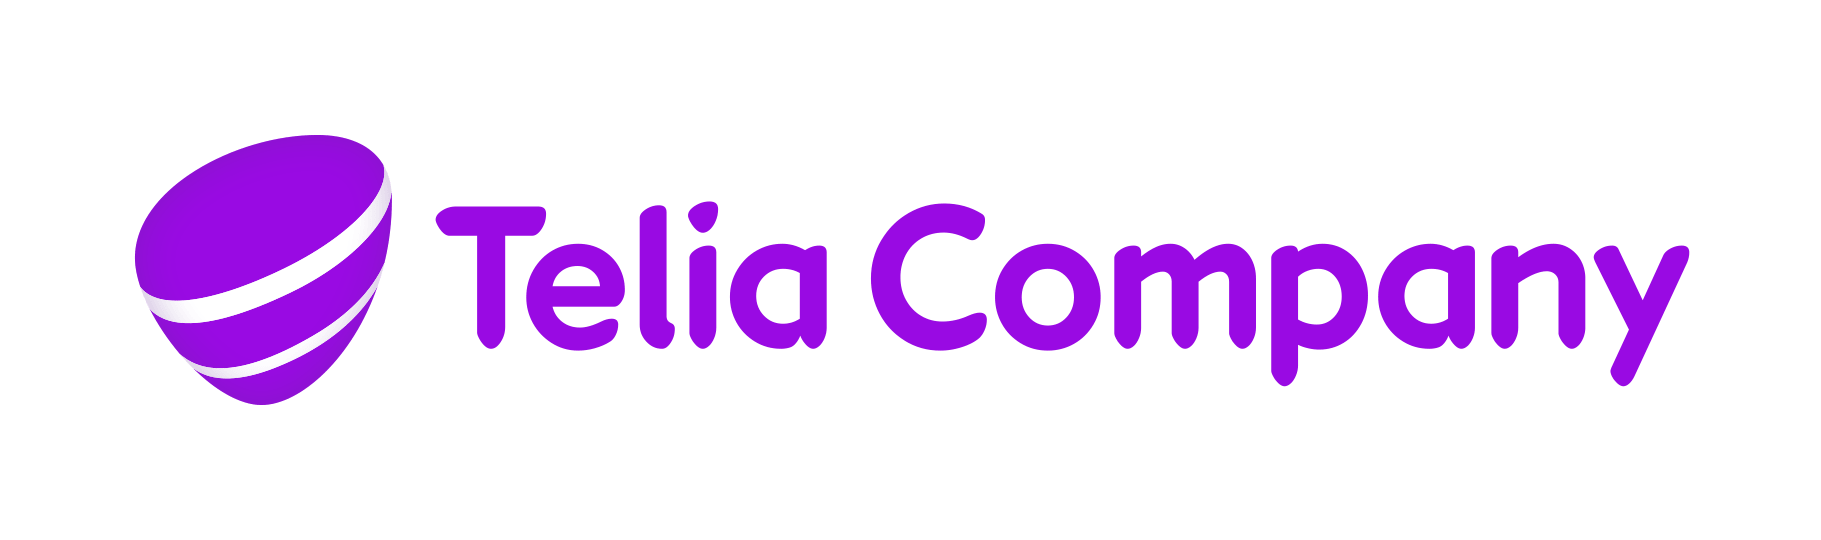 telia-company-logo